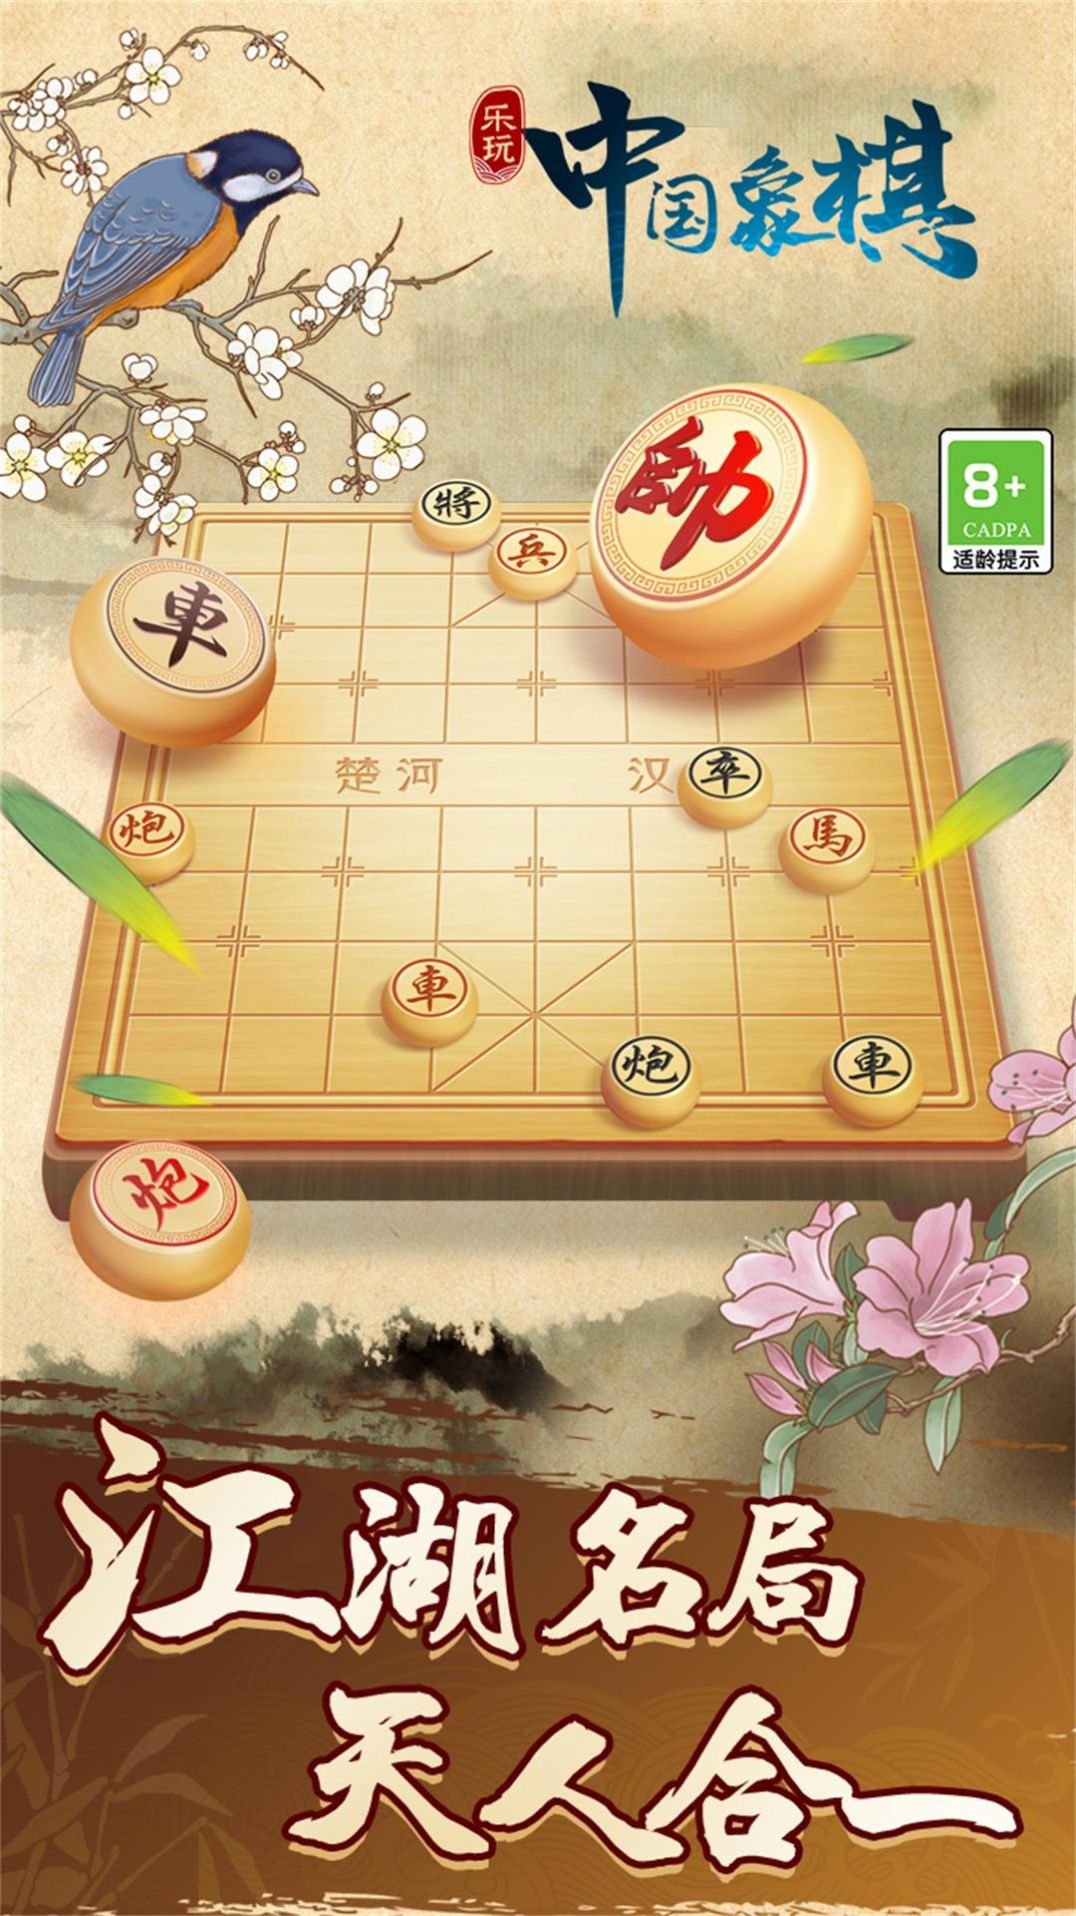 中国象棋巅峰博弈游戏安卓版图片3